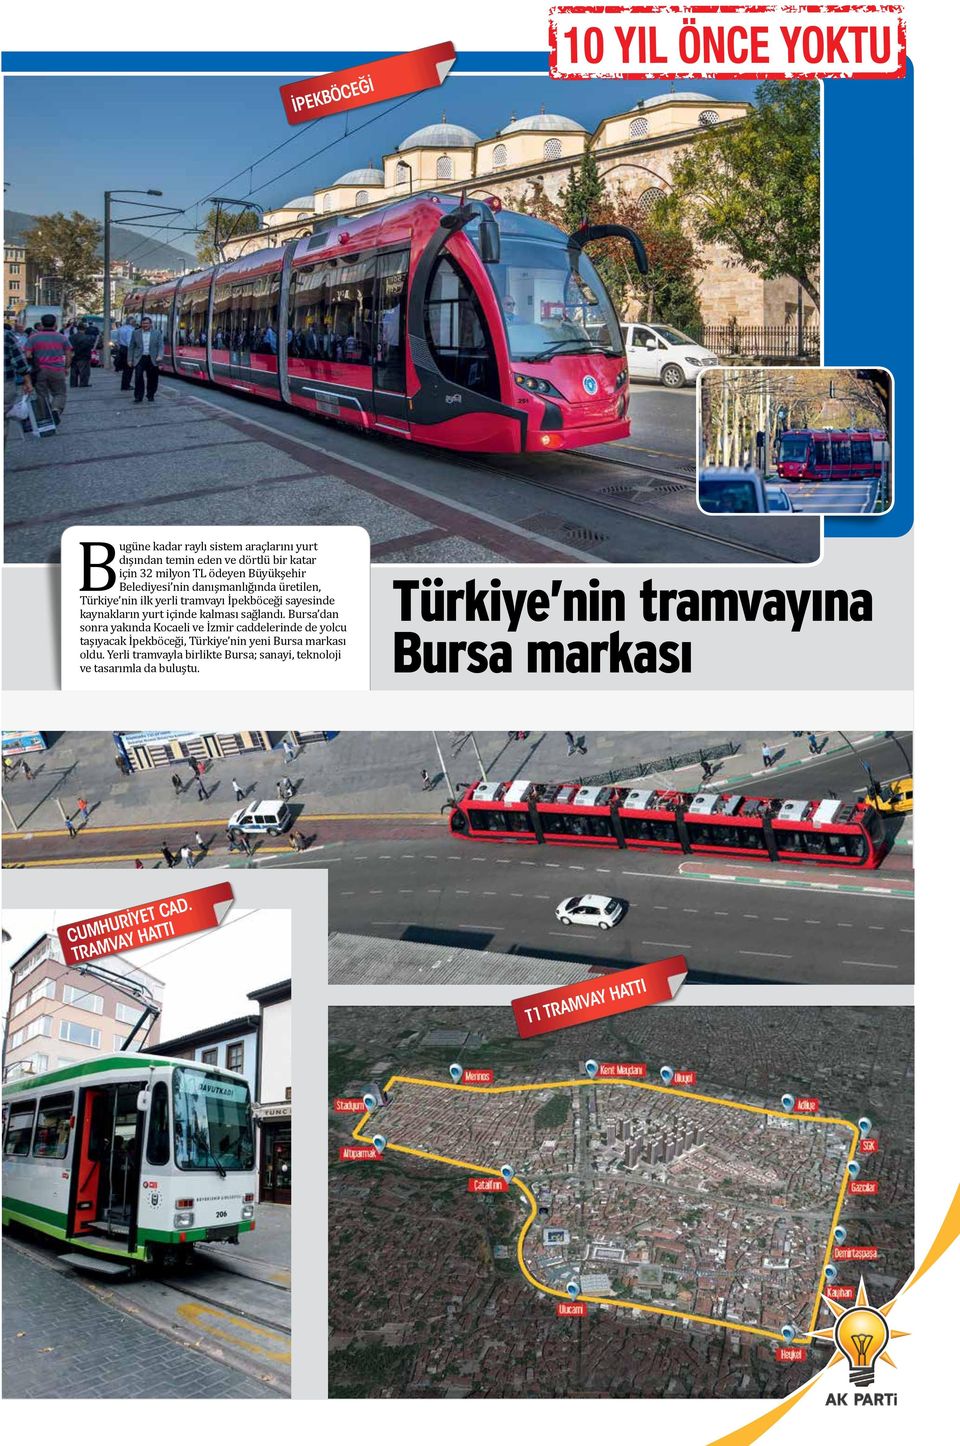 Bursa dan sonra yakında Kocaeli ve İzmir caddelerinde de yolcu taşıyacak İpekböceği, Türkiye nin yeni Bursa markası oldu.